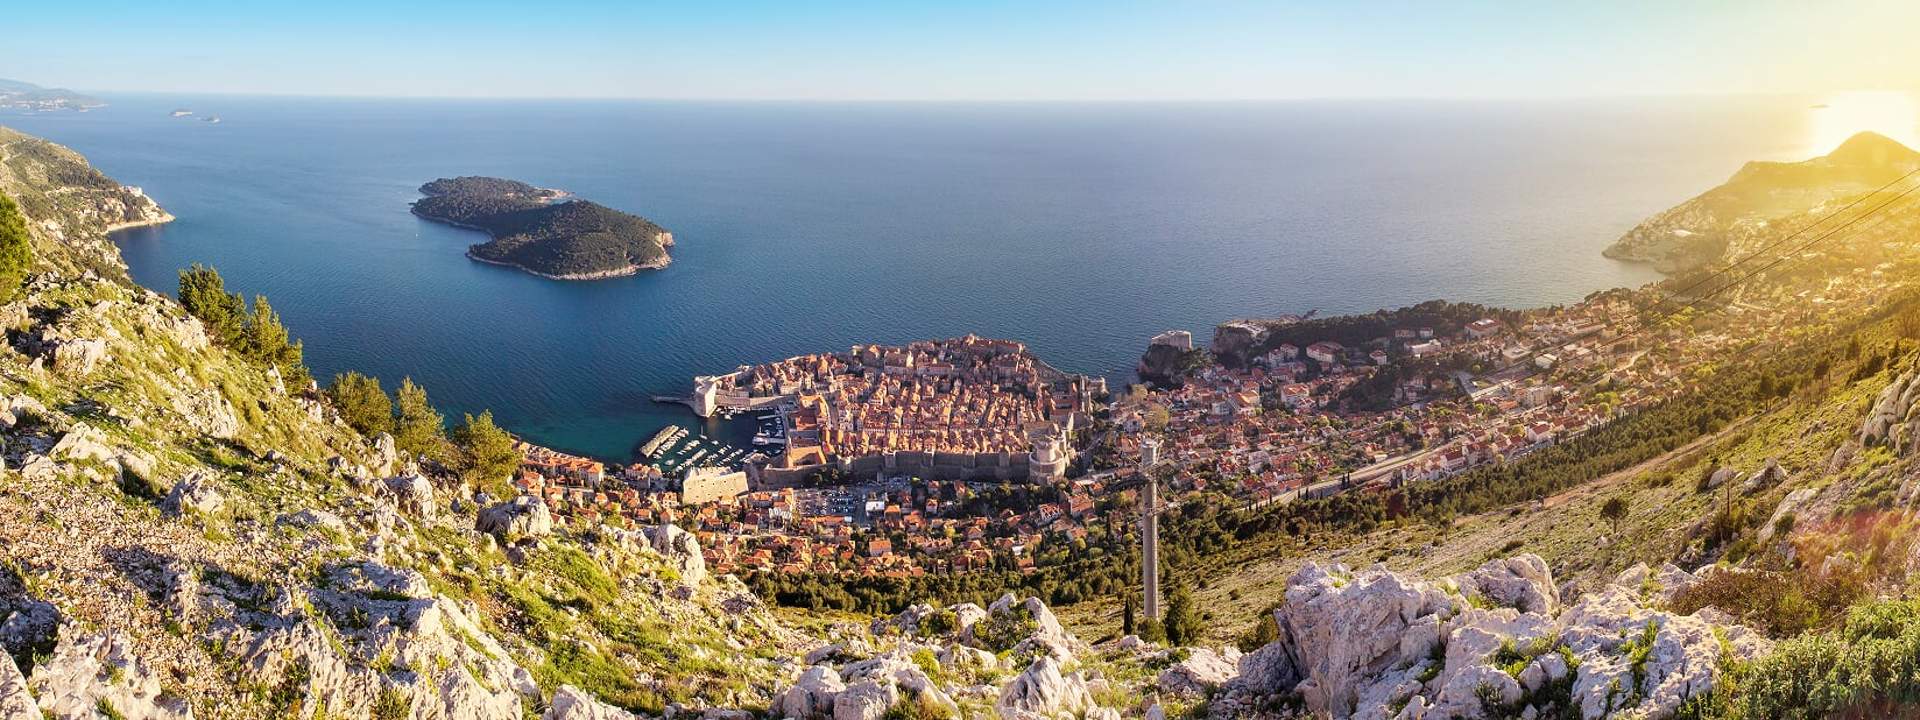 Descubre el encanto de Croacia y sus maravillosas islas